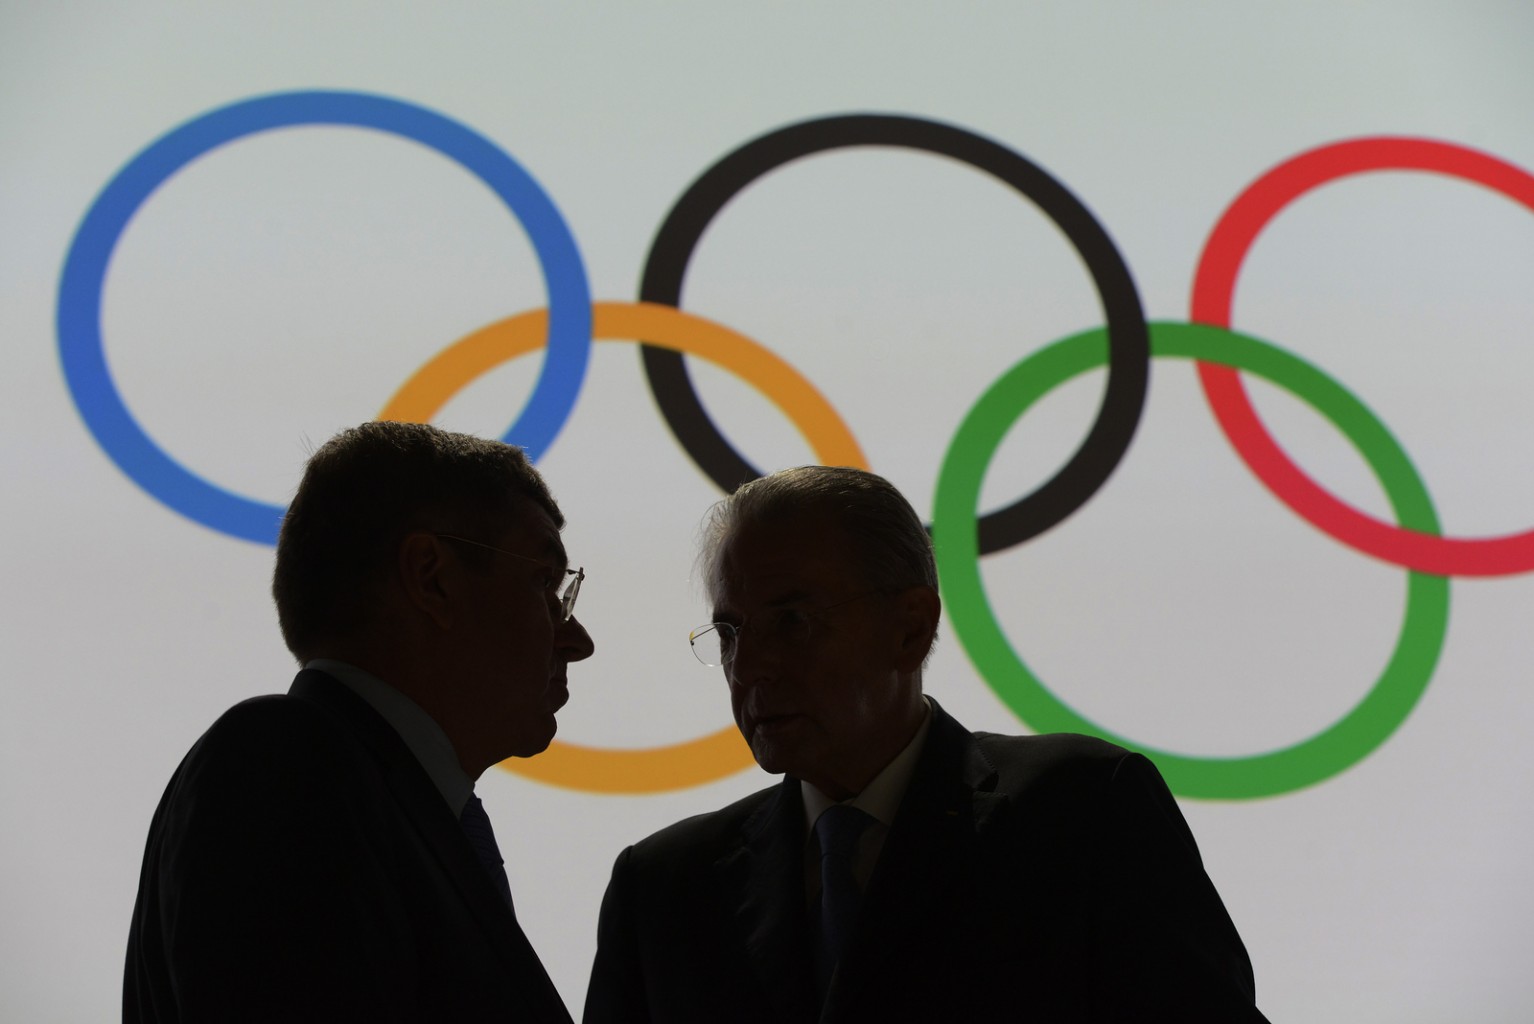 (c) IOC, Richard Juilliart, via Flickr